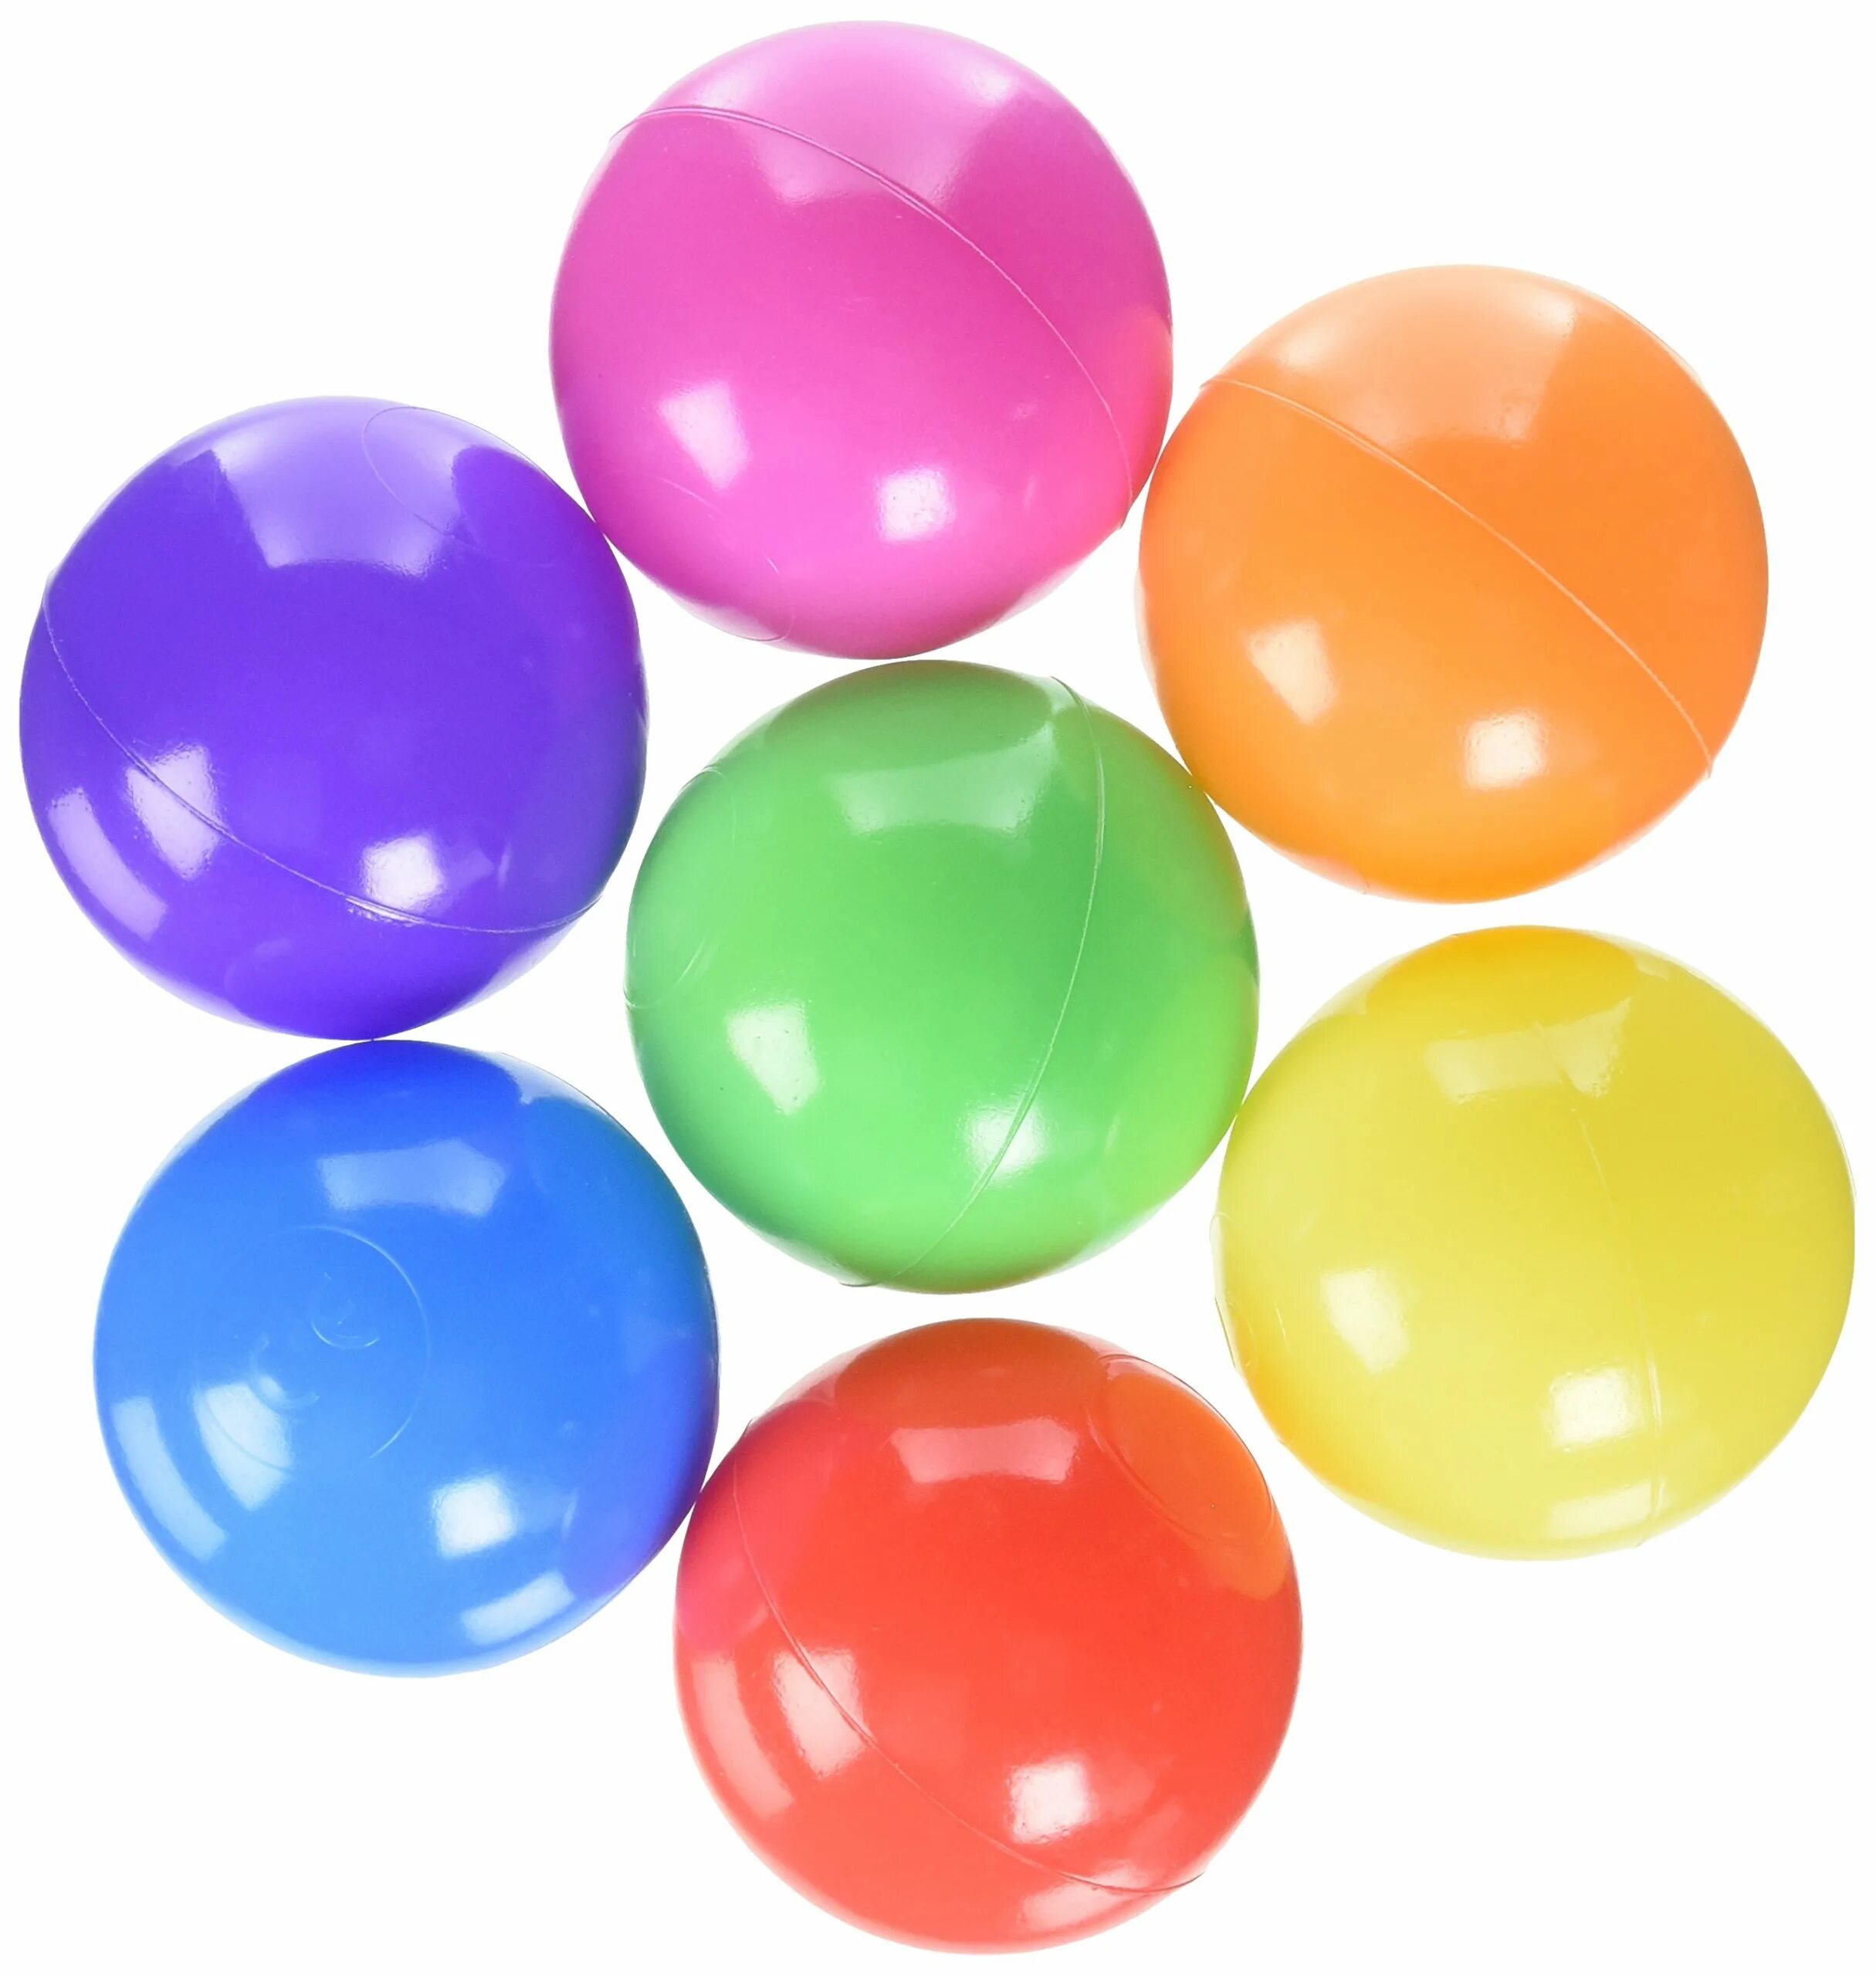 Шар 5 см. Мячик пластмассовый. Пластиковые мячики. Пластиковые шарики. Ребенок пластиковые шарики.